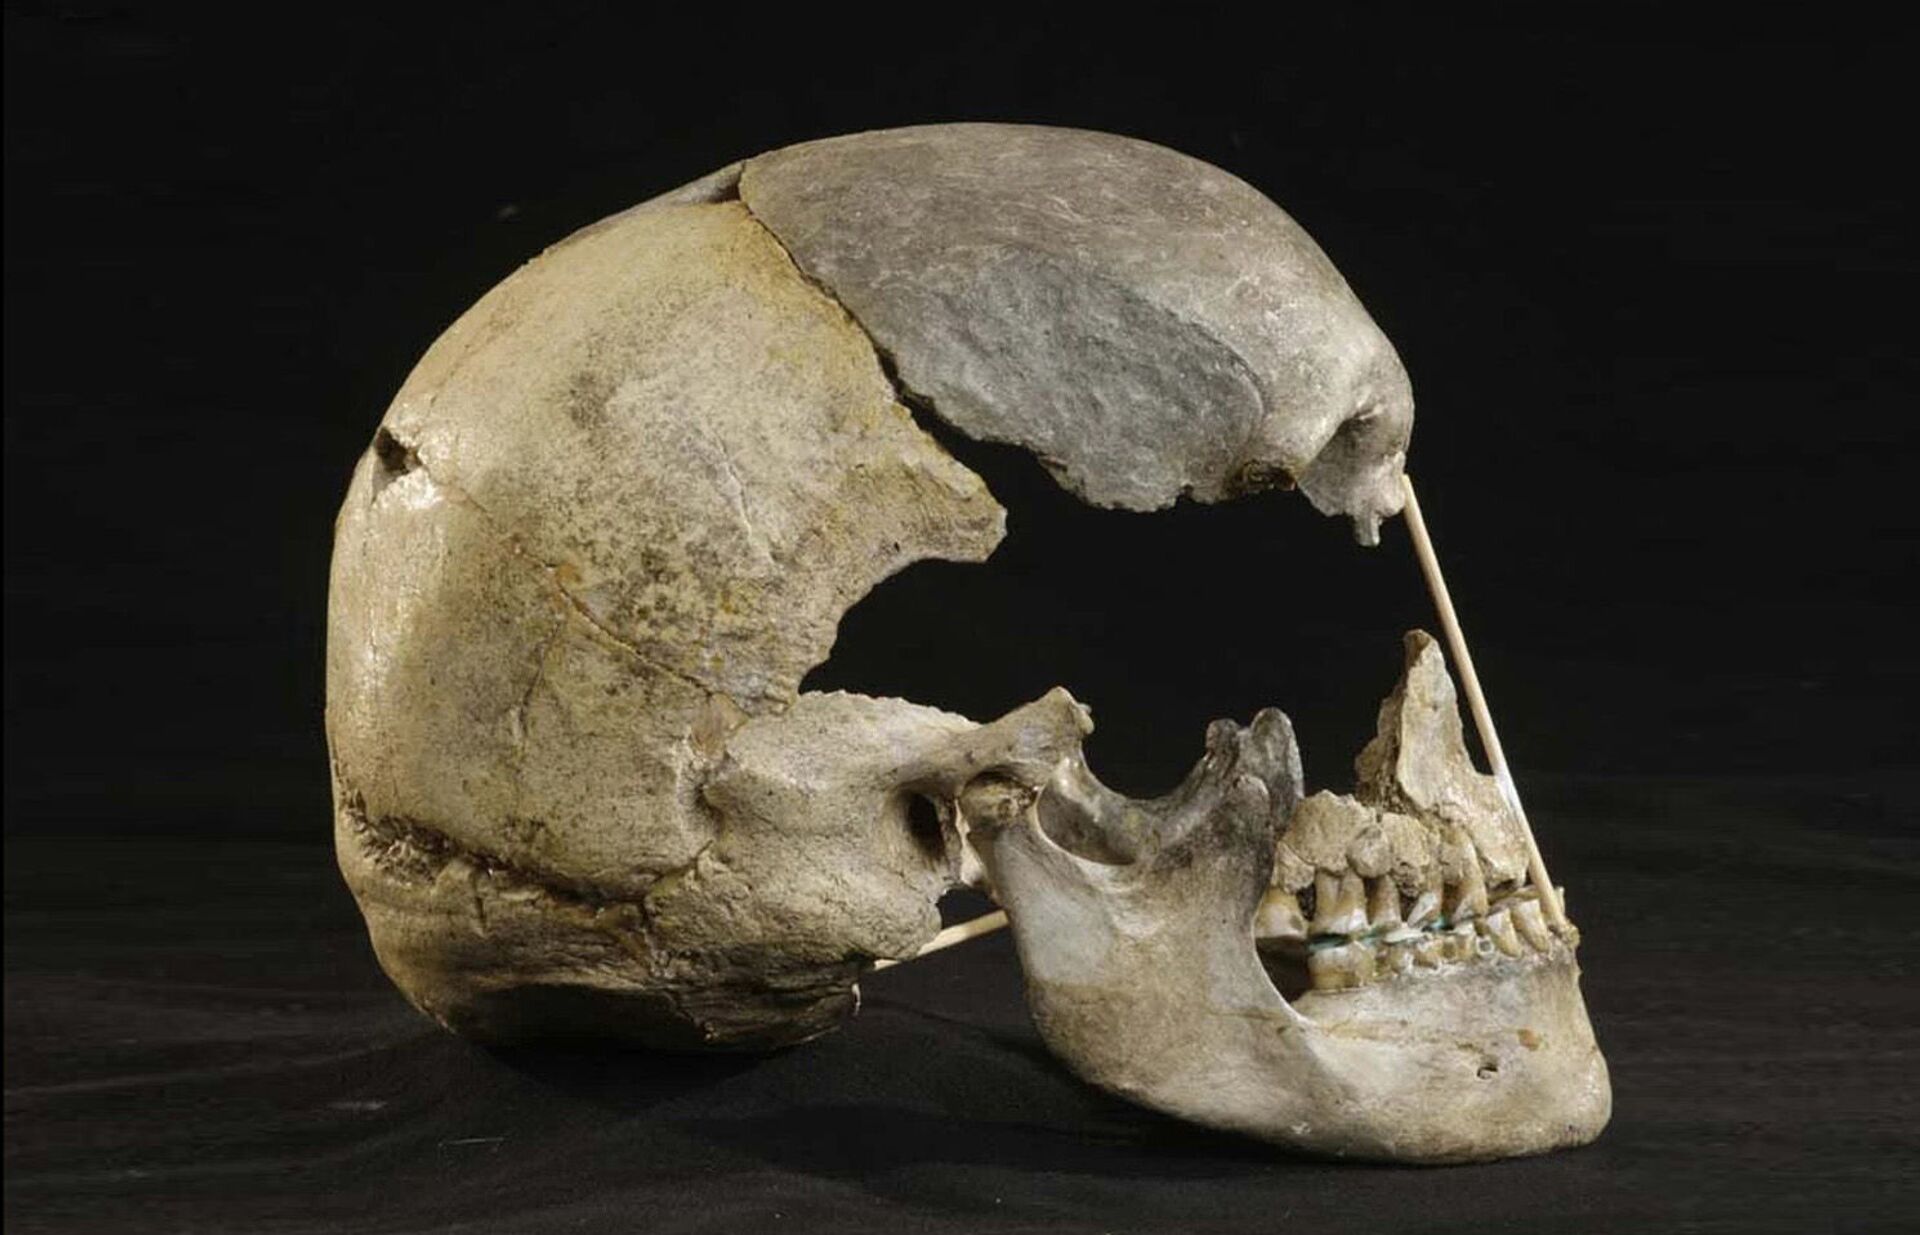 Pitada de genes neandertais: cientistas reconstroem o genoma mais antigo do homem europeu (FOTO) - Sputnik Brasil, 1920, 08.04.2021